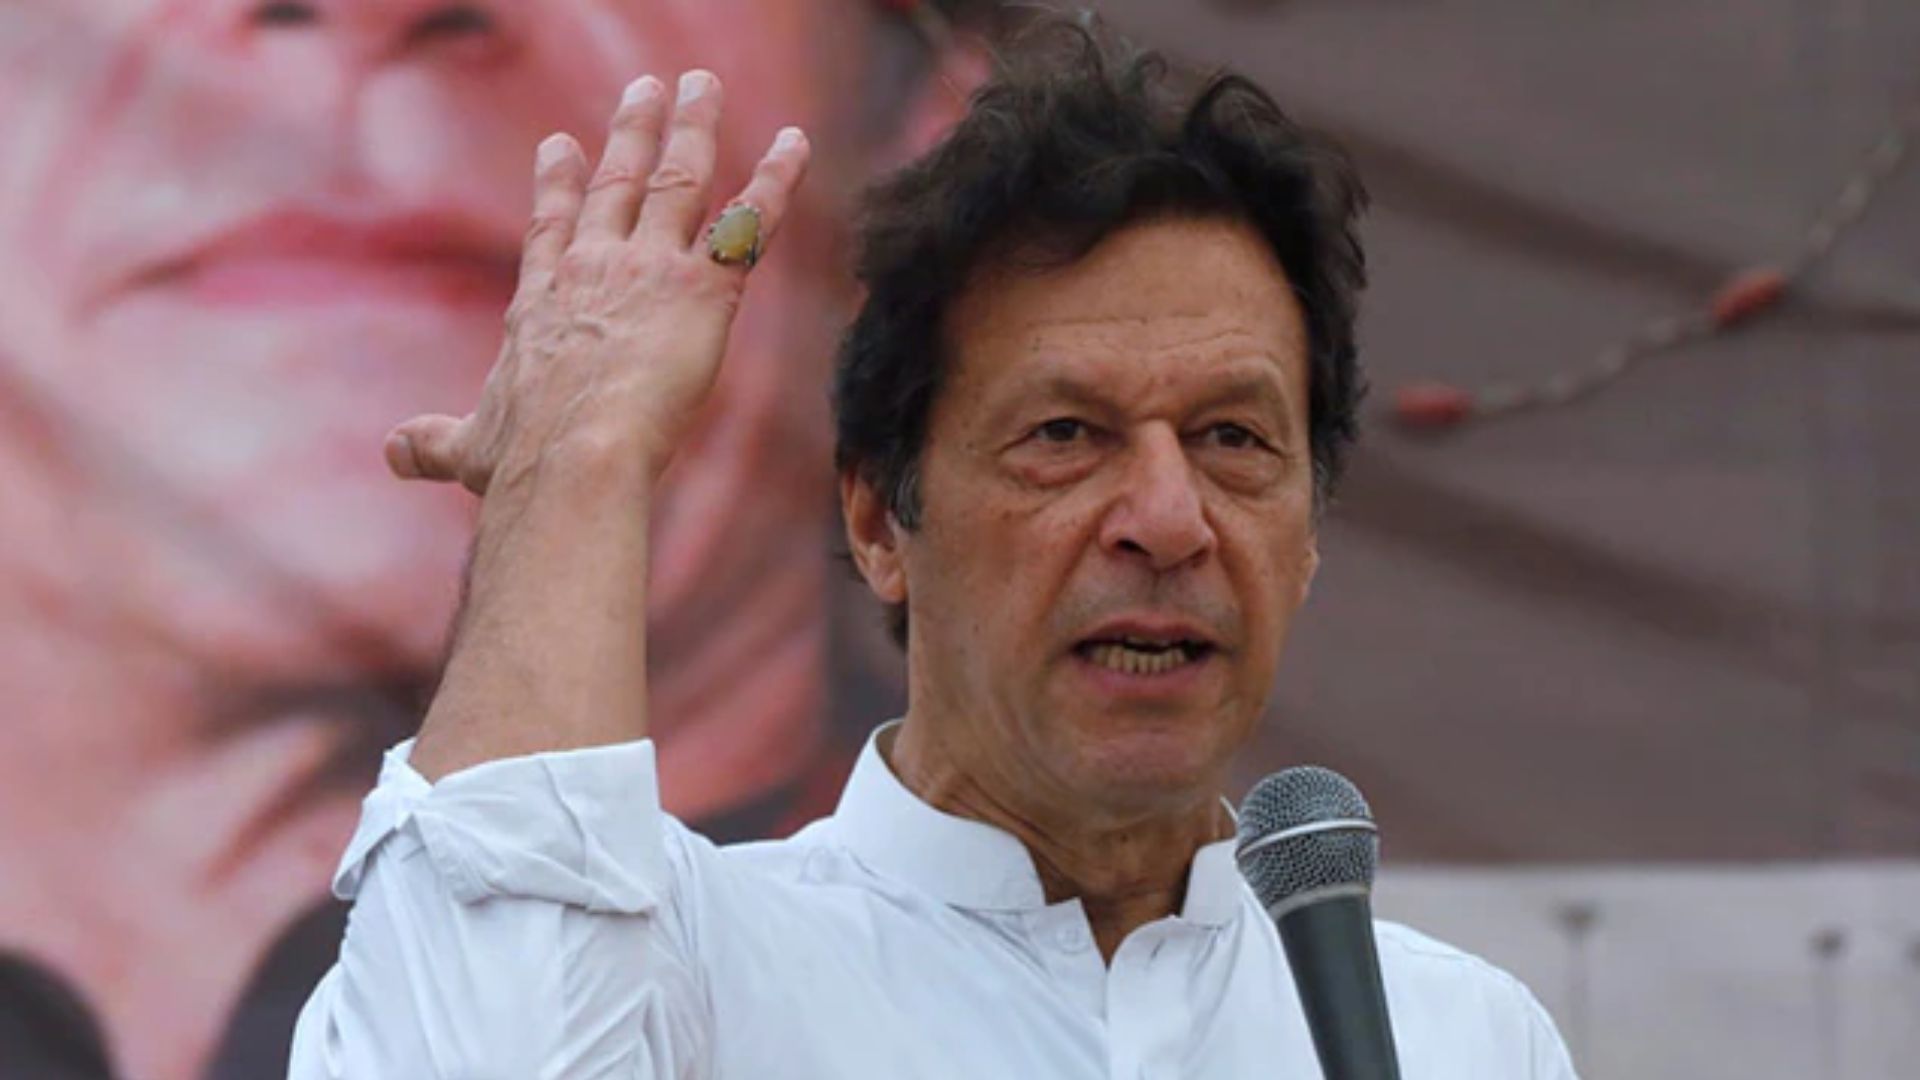 Pakistan : 1 नहीं...2 नहीं...उपचुनाव में सभी 33 सीटों पर चुनाव लड़ेंगे इमरान खान